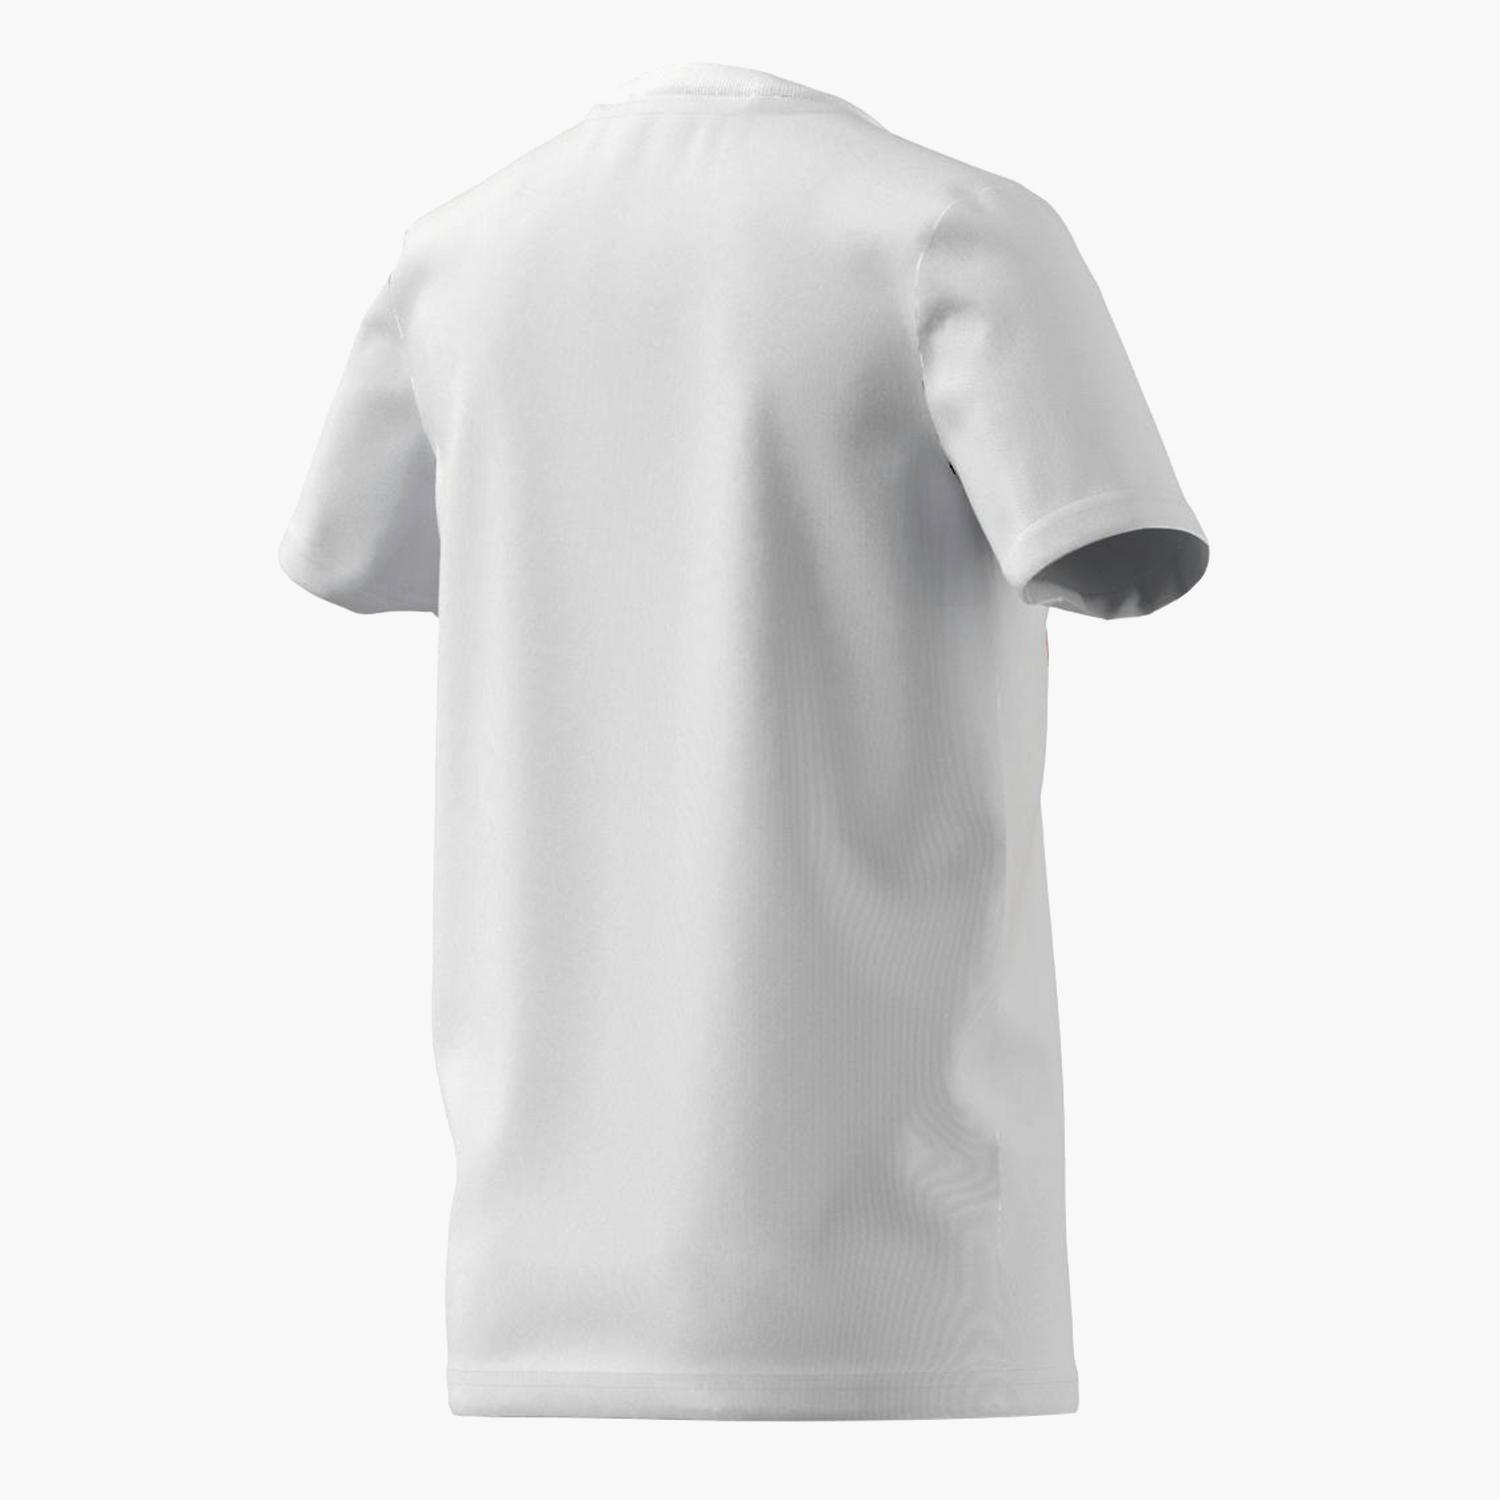 T-shirt  Performance - Branco - T-shirt Rapaz tamanho 12